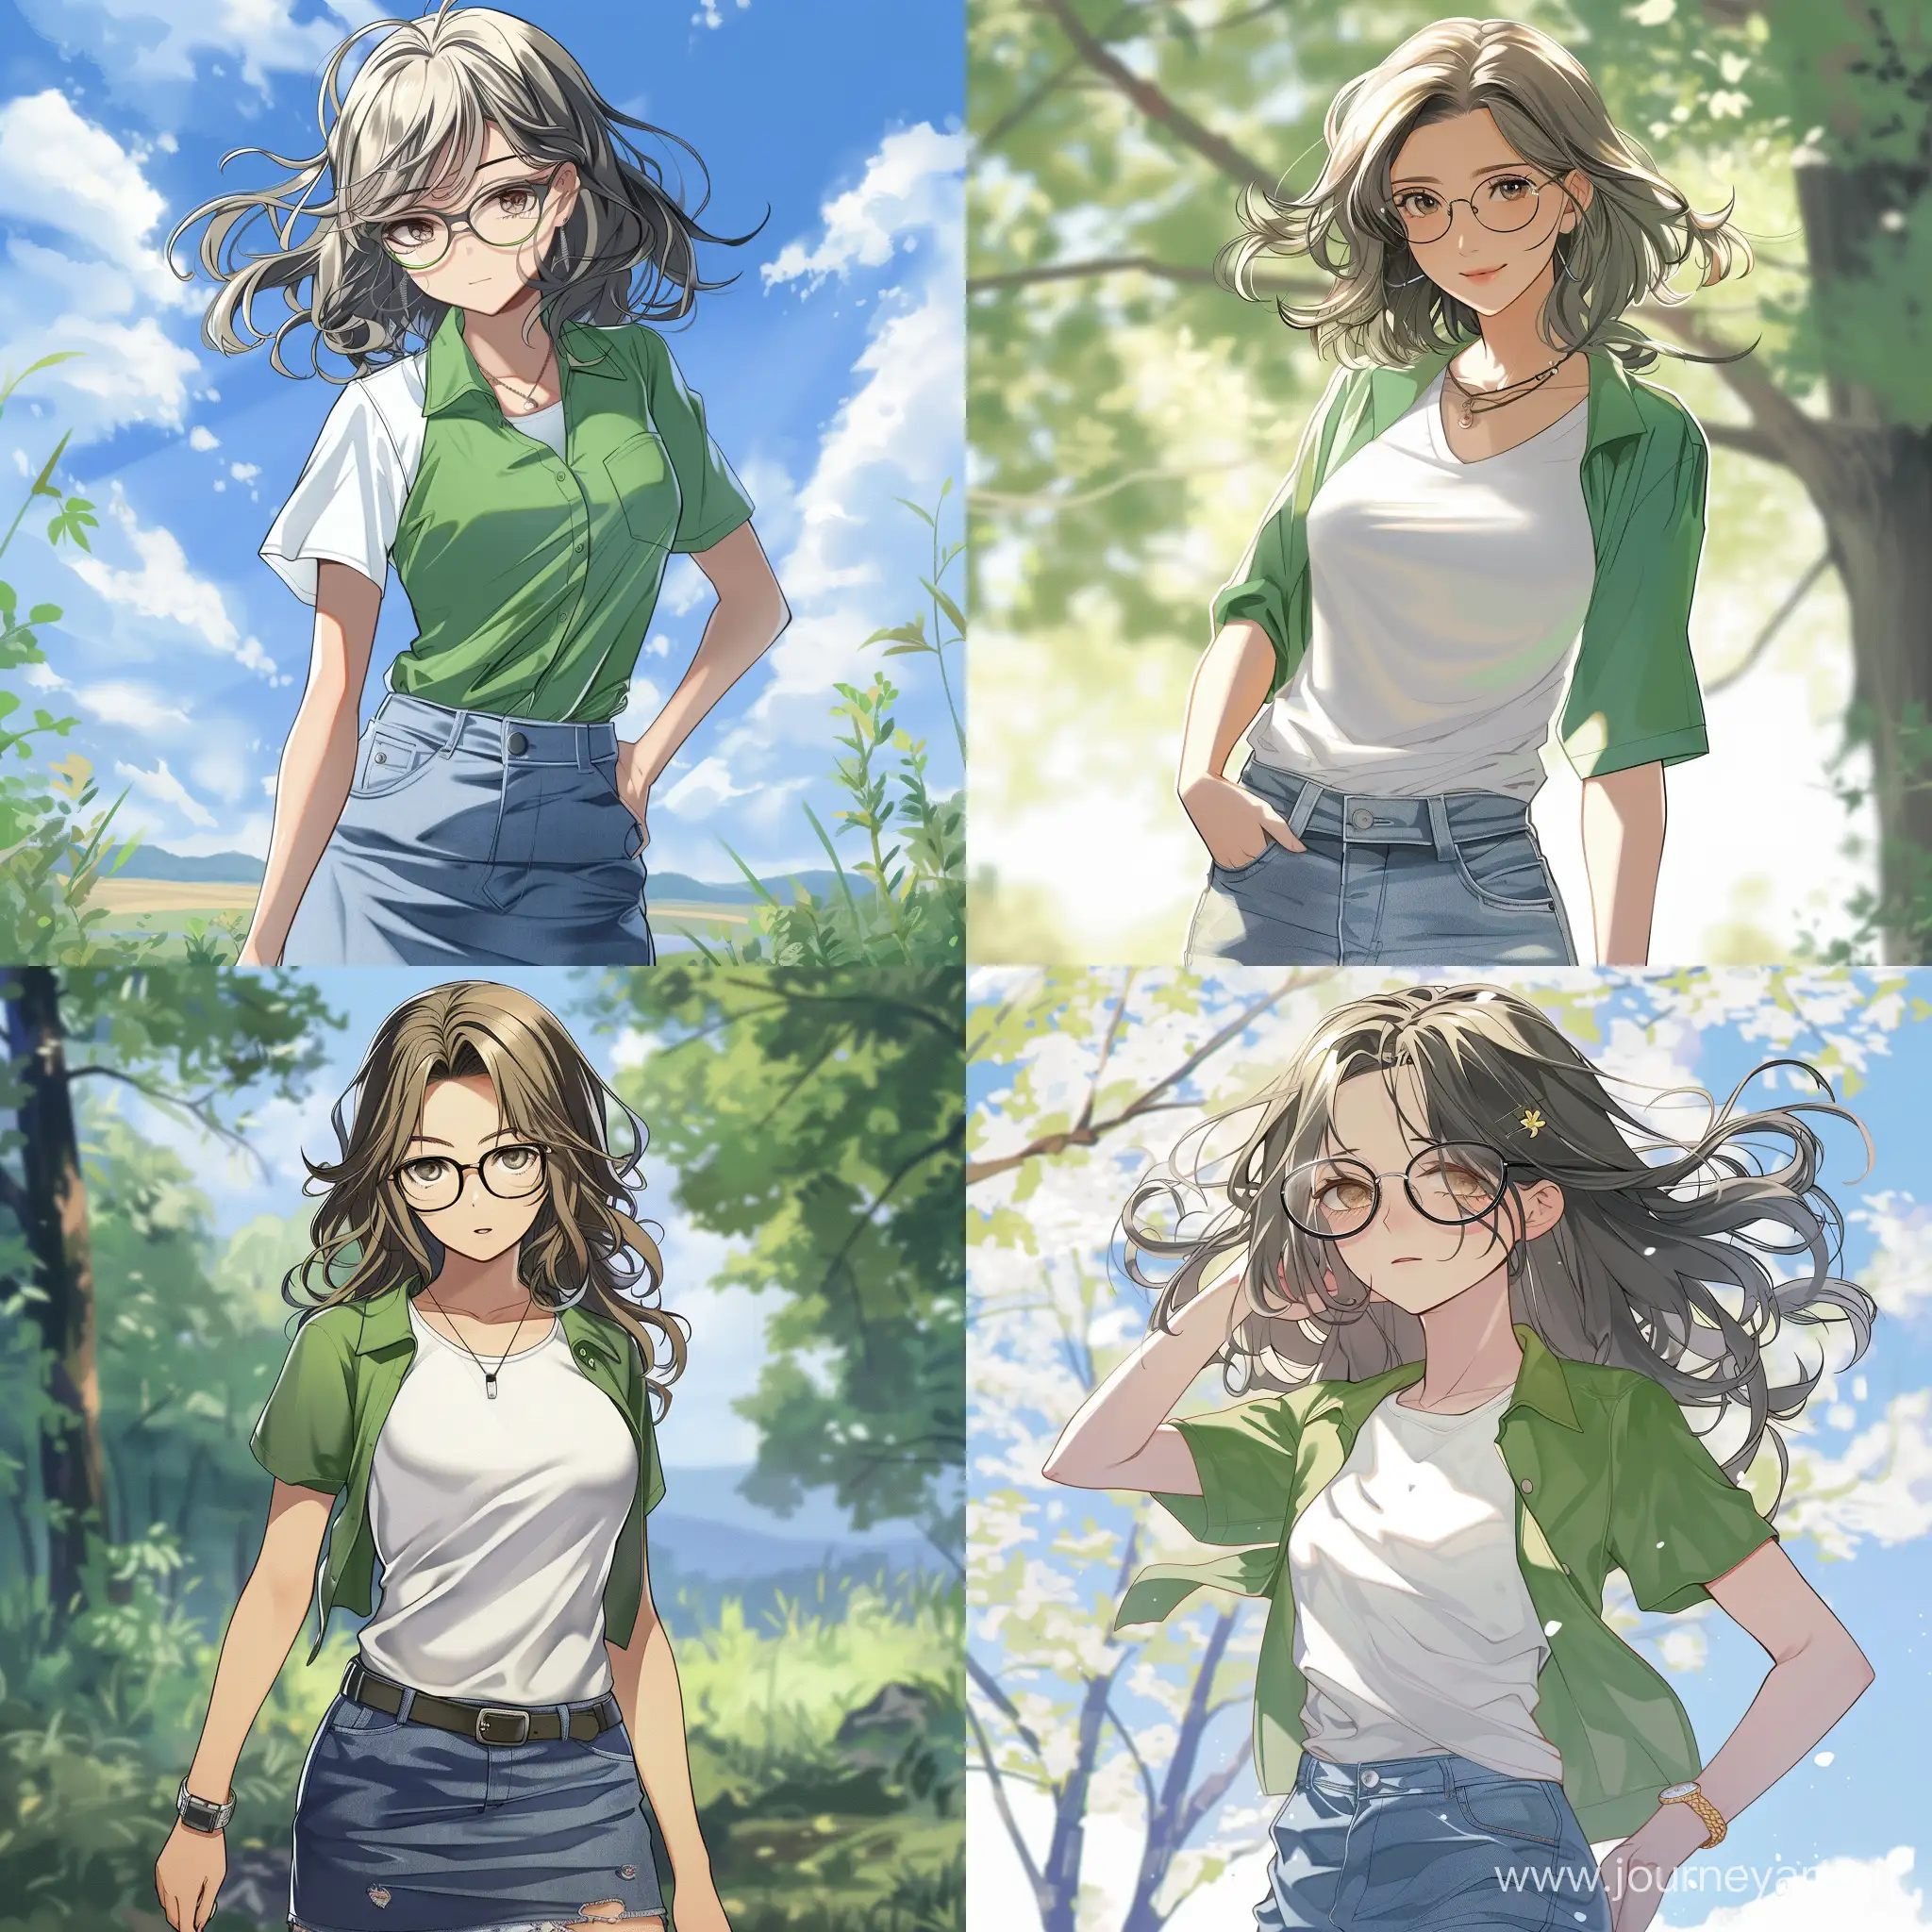 anime girl, dark blond hair, glasses, white T-shirt, green shirt, jeans skirt, nearby volga, spring